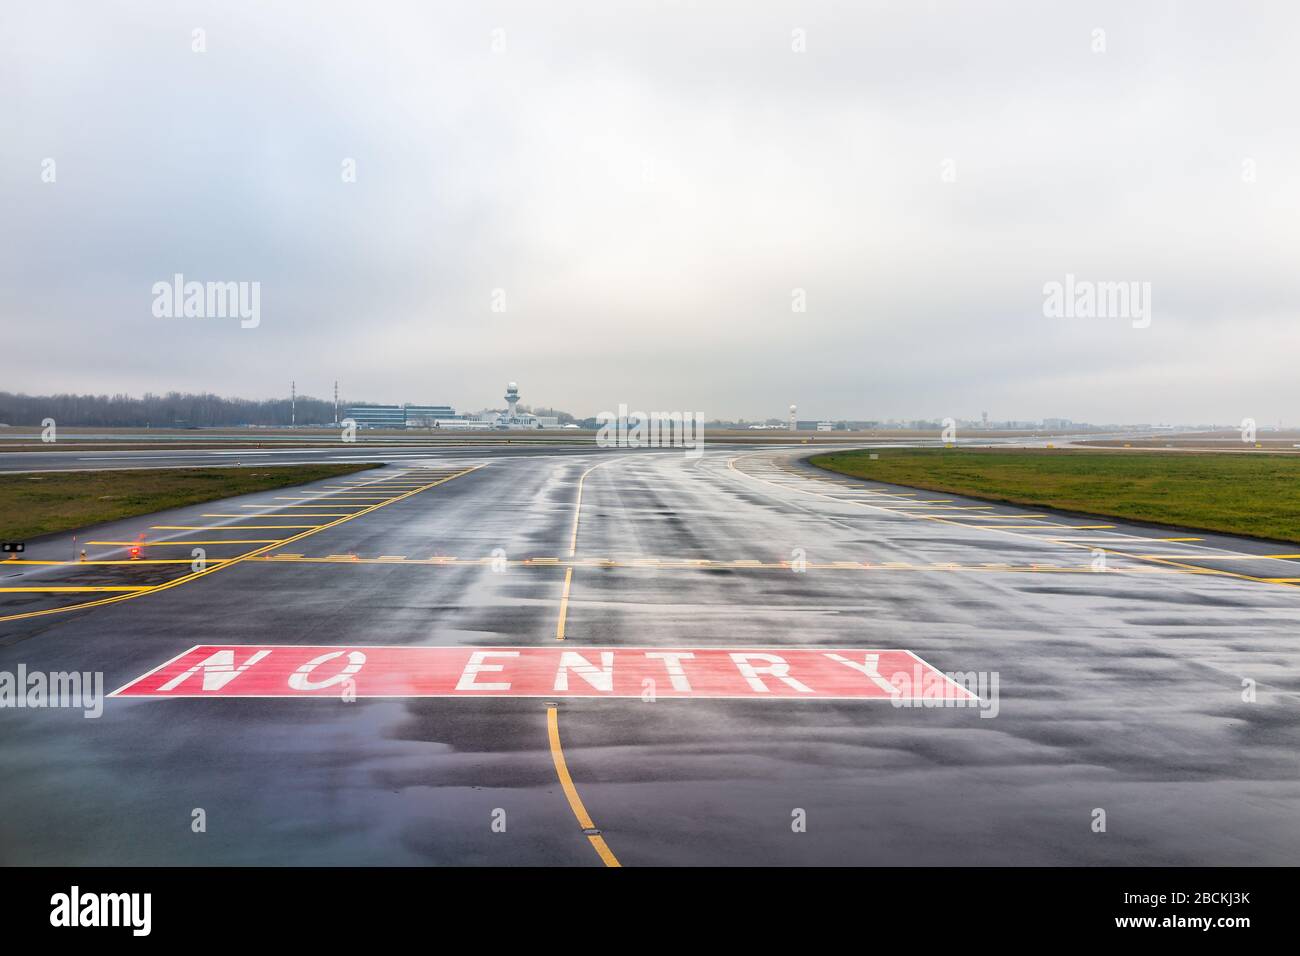 Varsovie, Pologne - 23 janvier 2020 : piste d'aéroport international de Chopin sans panneau d'entrée pour les avions le jour d'hiver nuageux Banque D'Images